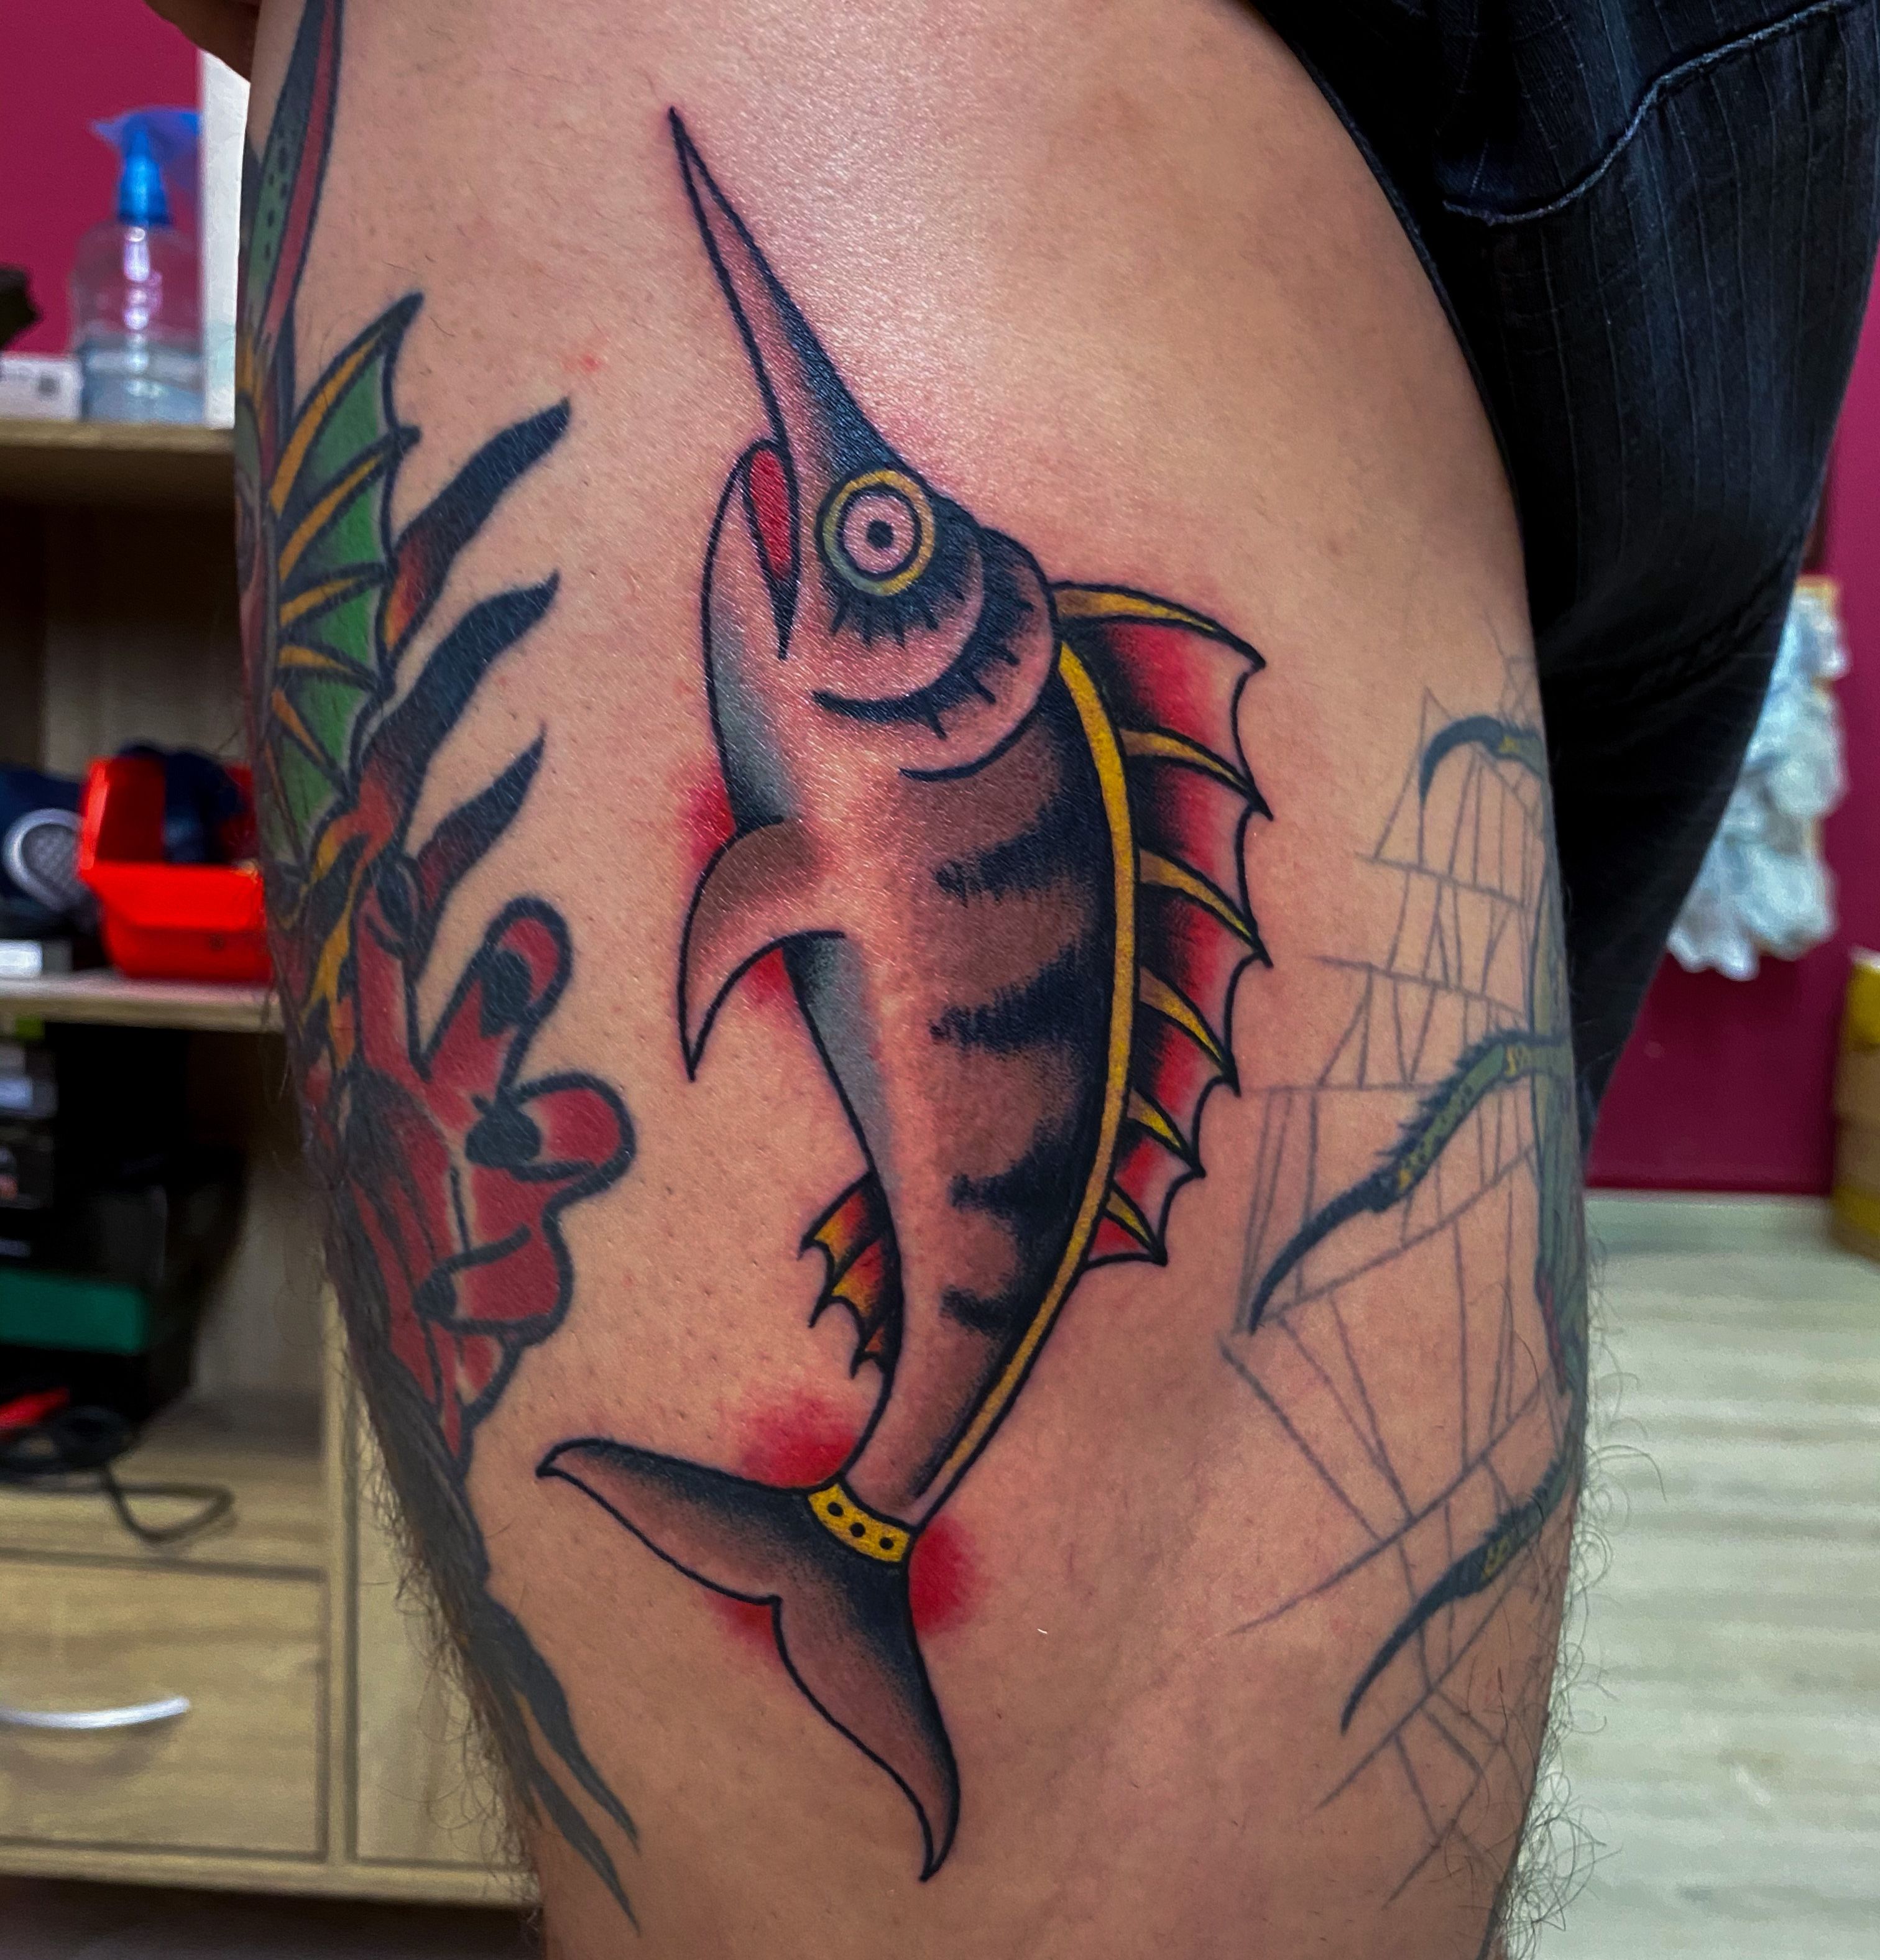 TANTRA TATTOO on Twitter Gold fish traditional tattoo  httpstcoxOoEmGMr62  Twitter